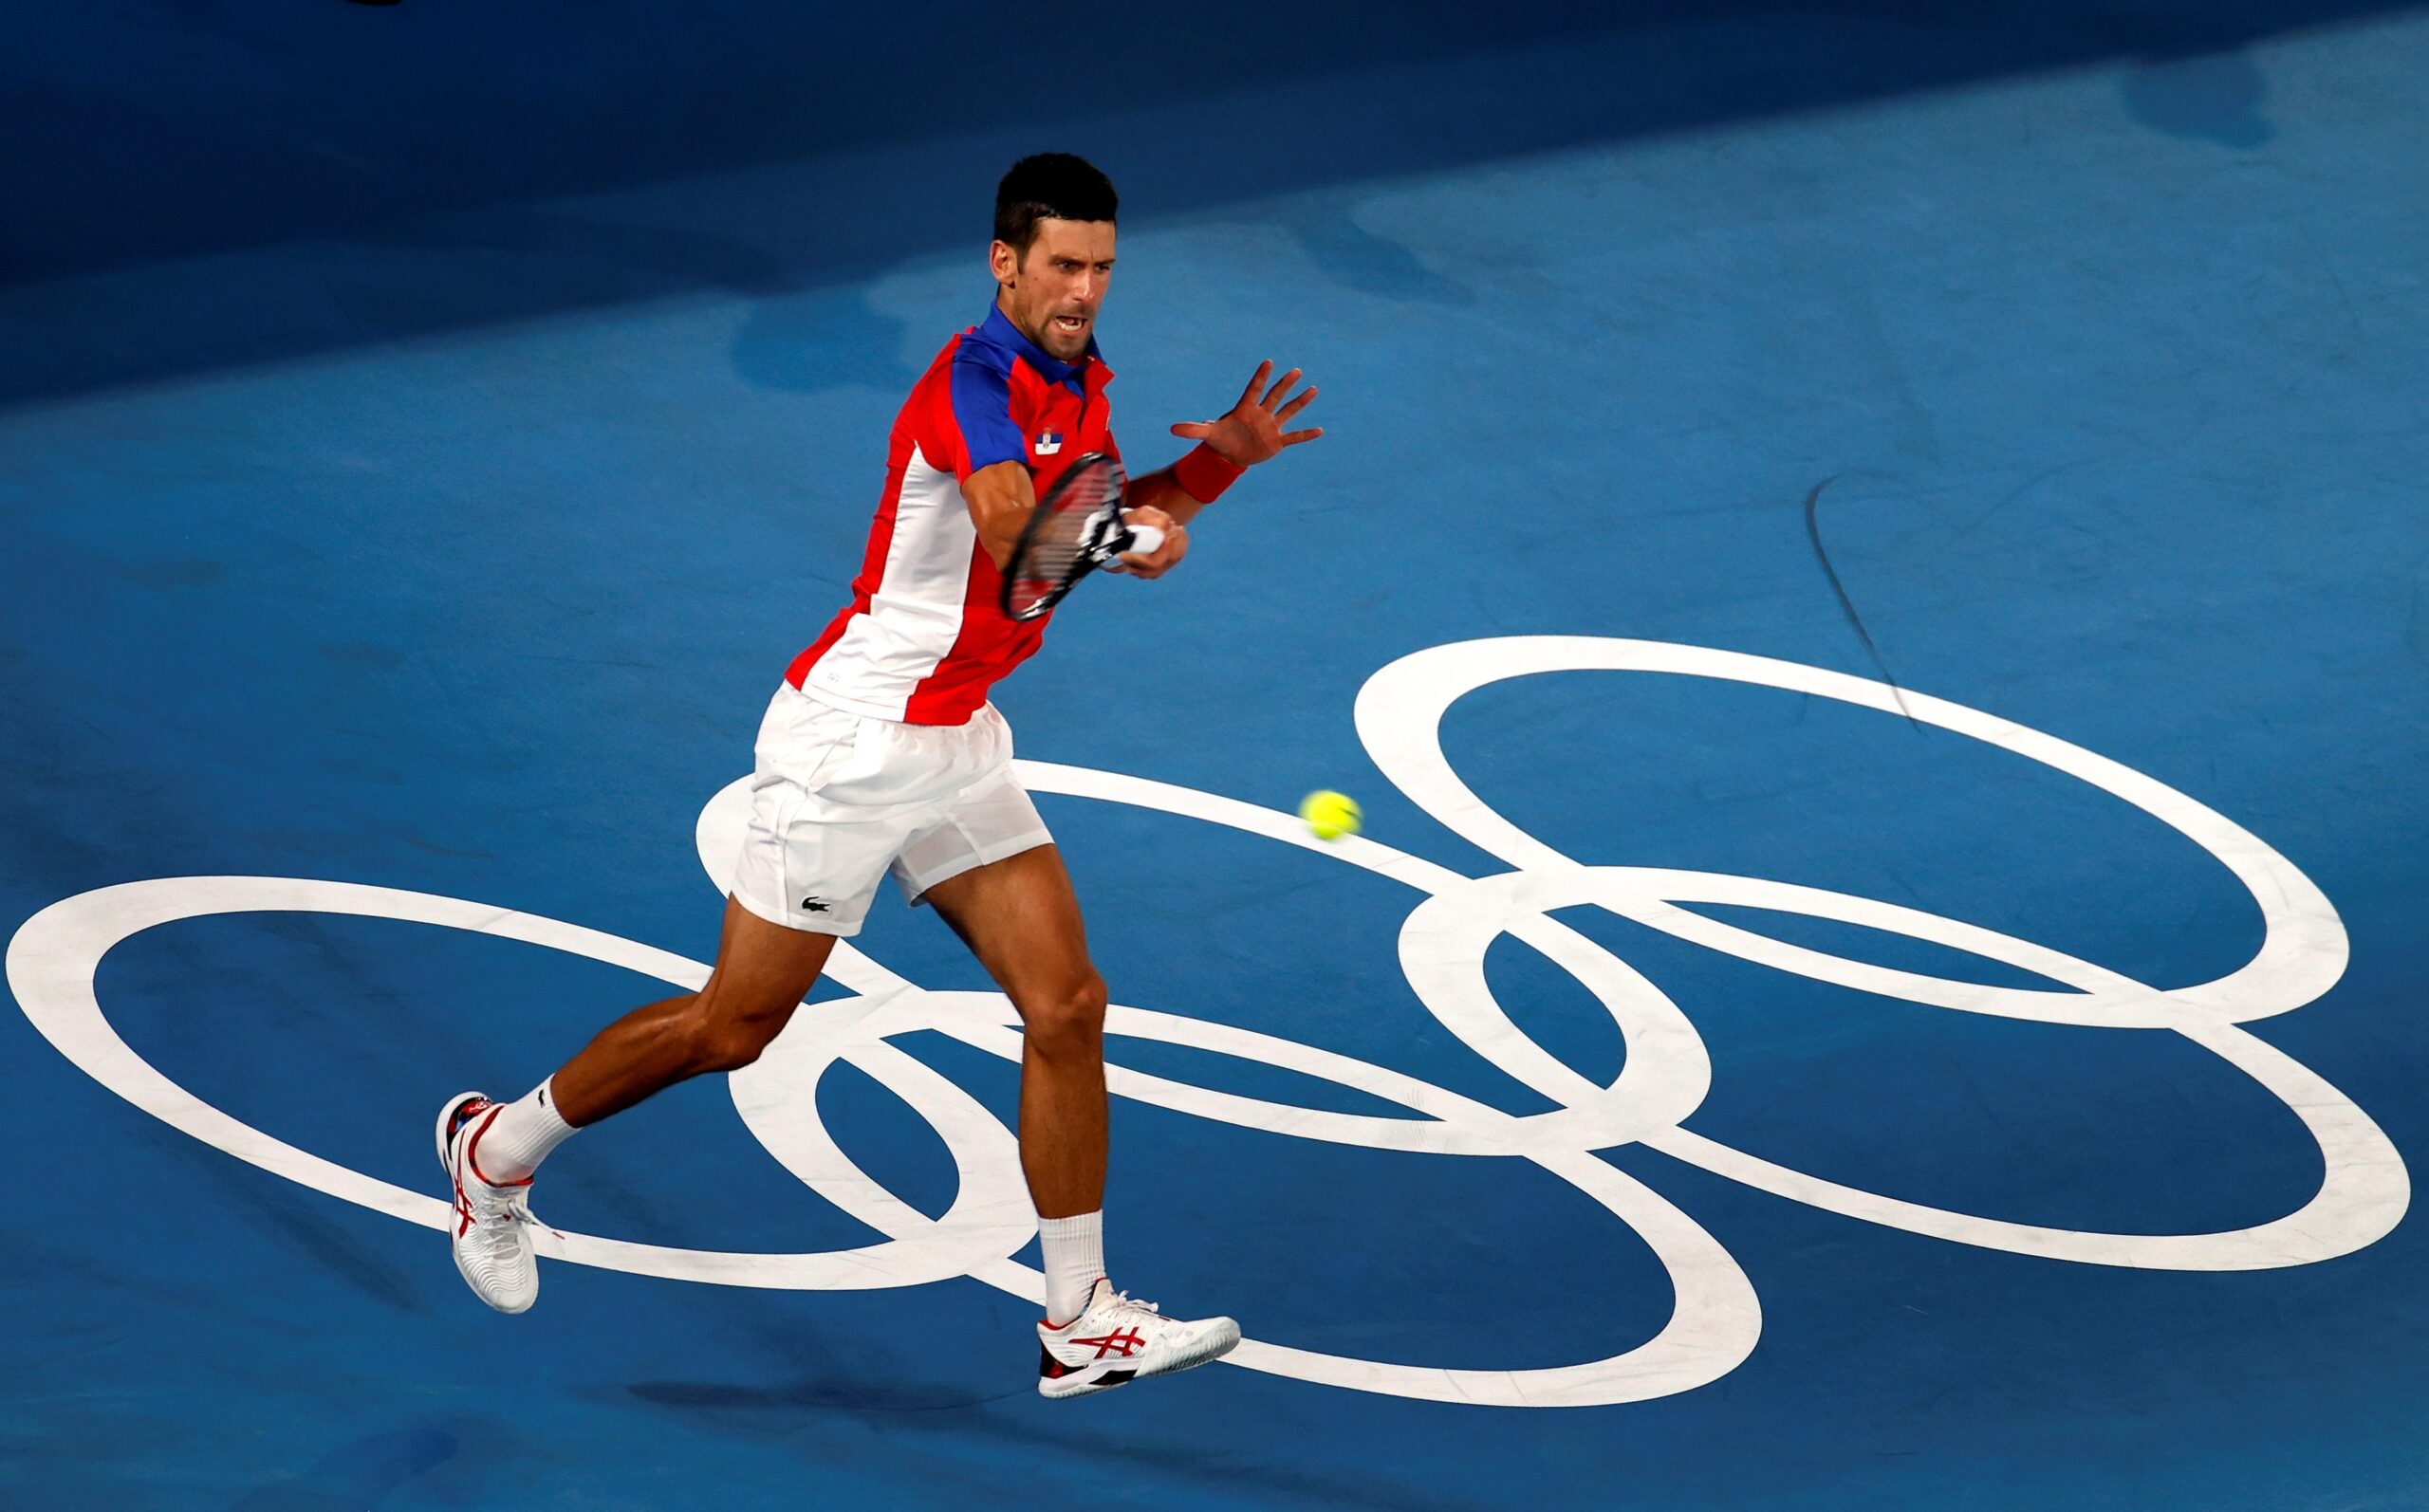 Novak Djokovic derrotó a Kei Nishikori y está en las semifinales de Tokio 2020. Foto: EFE